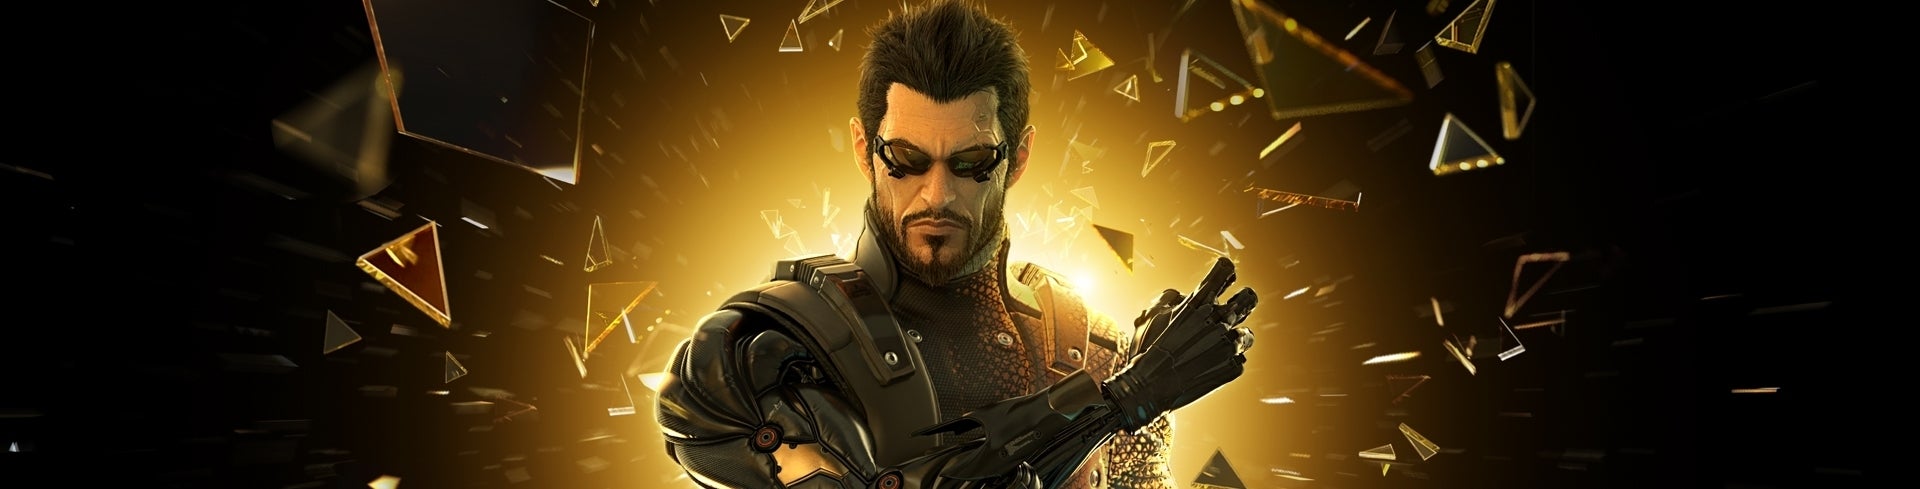 Afbeeldingen van Deus Ex: The Fall game voor smartphone en tablet